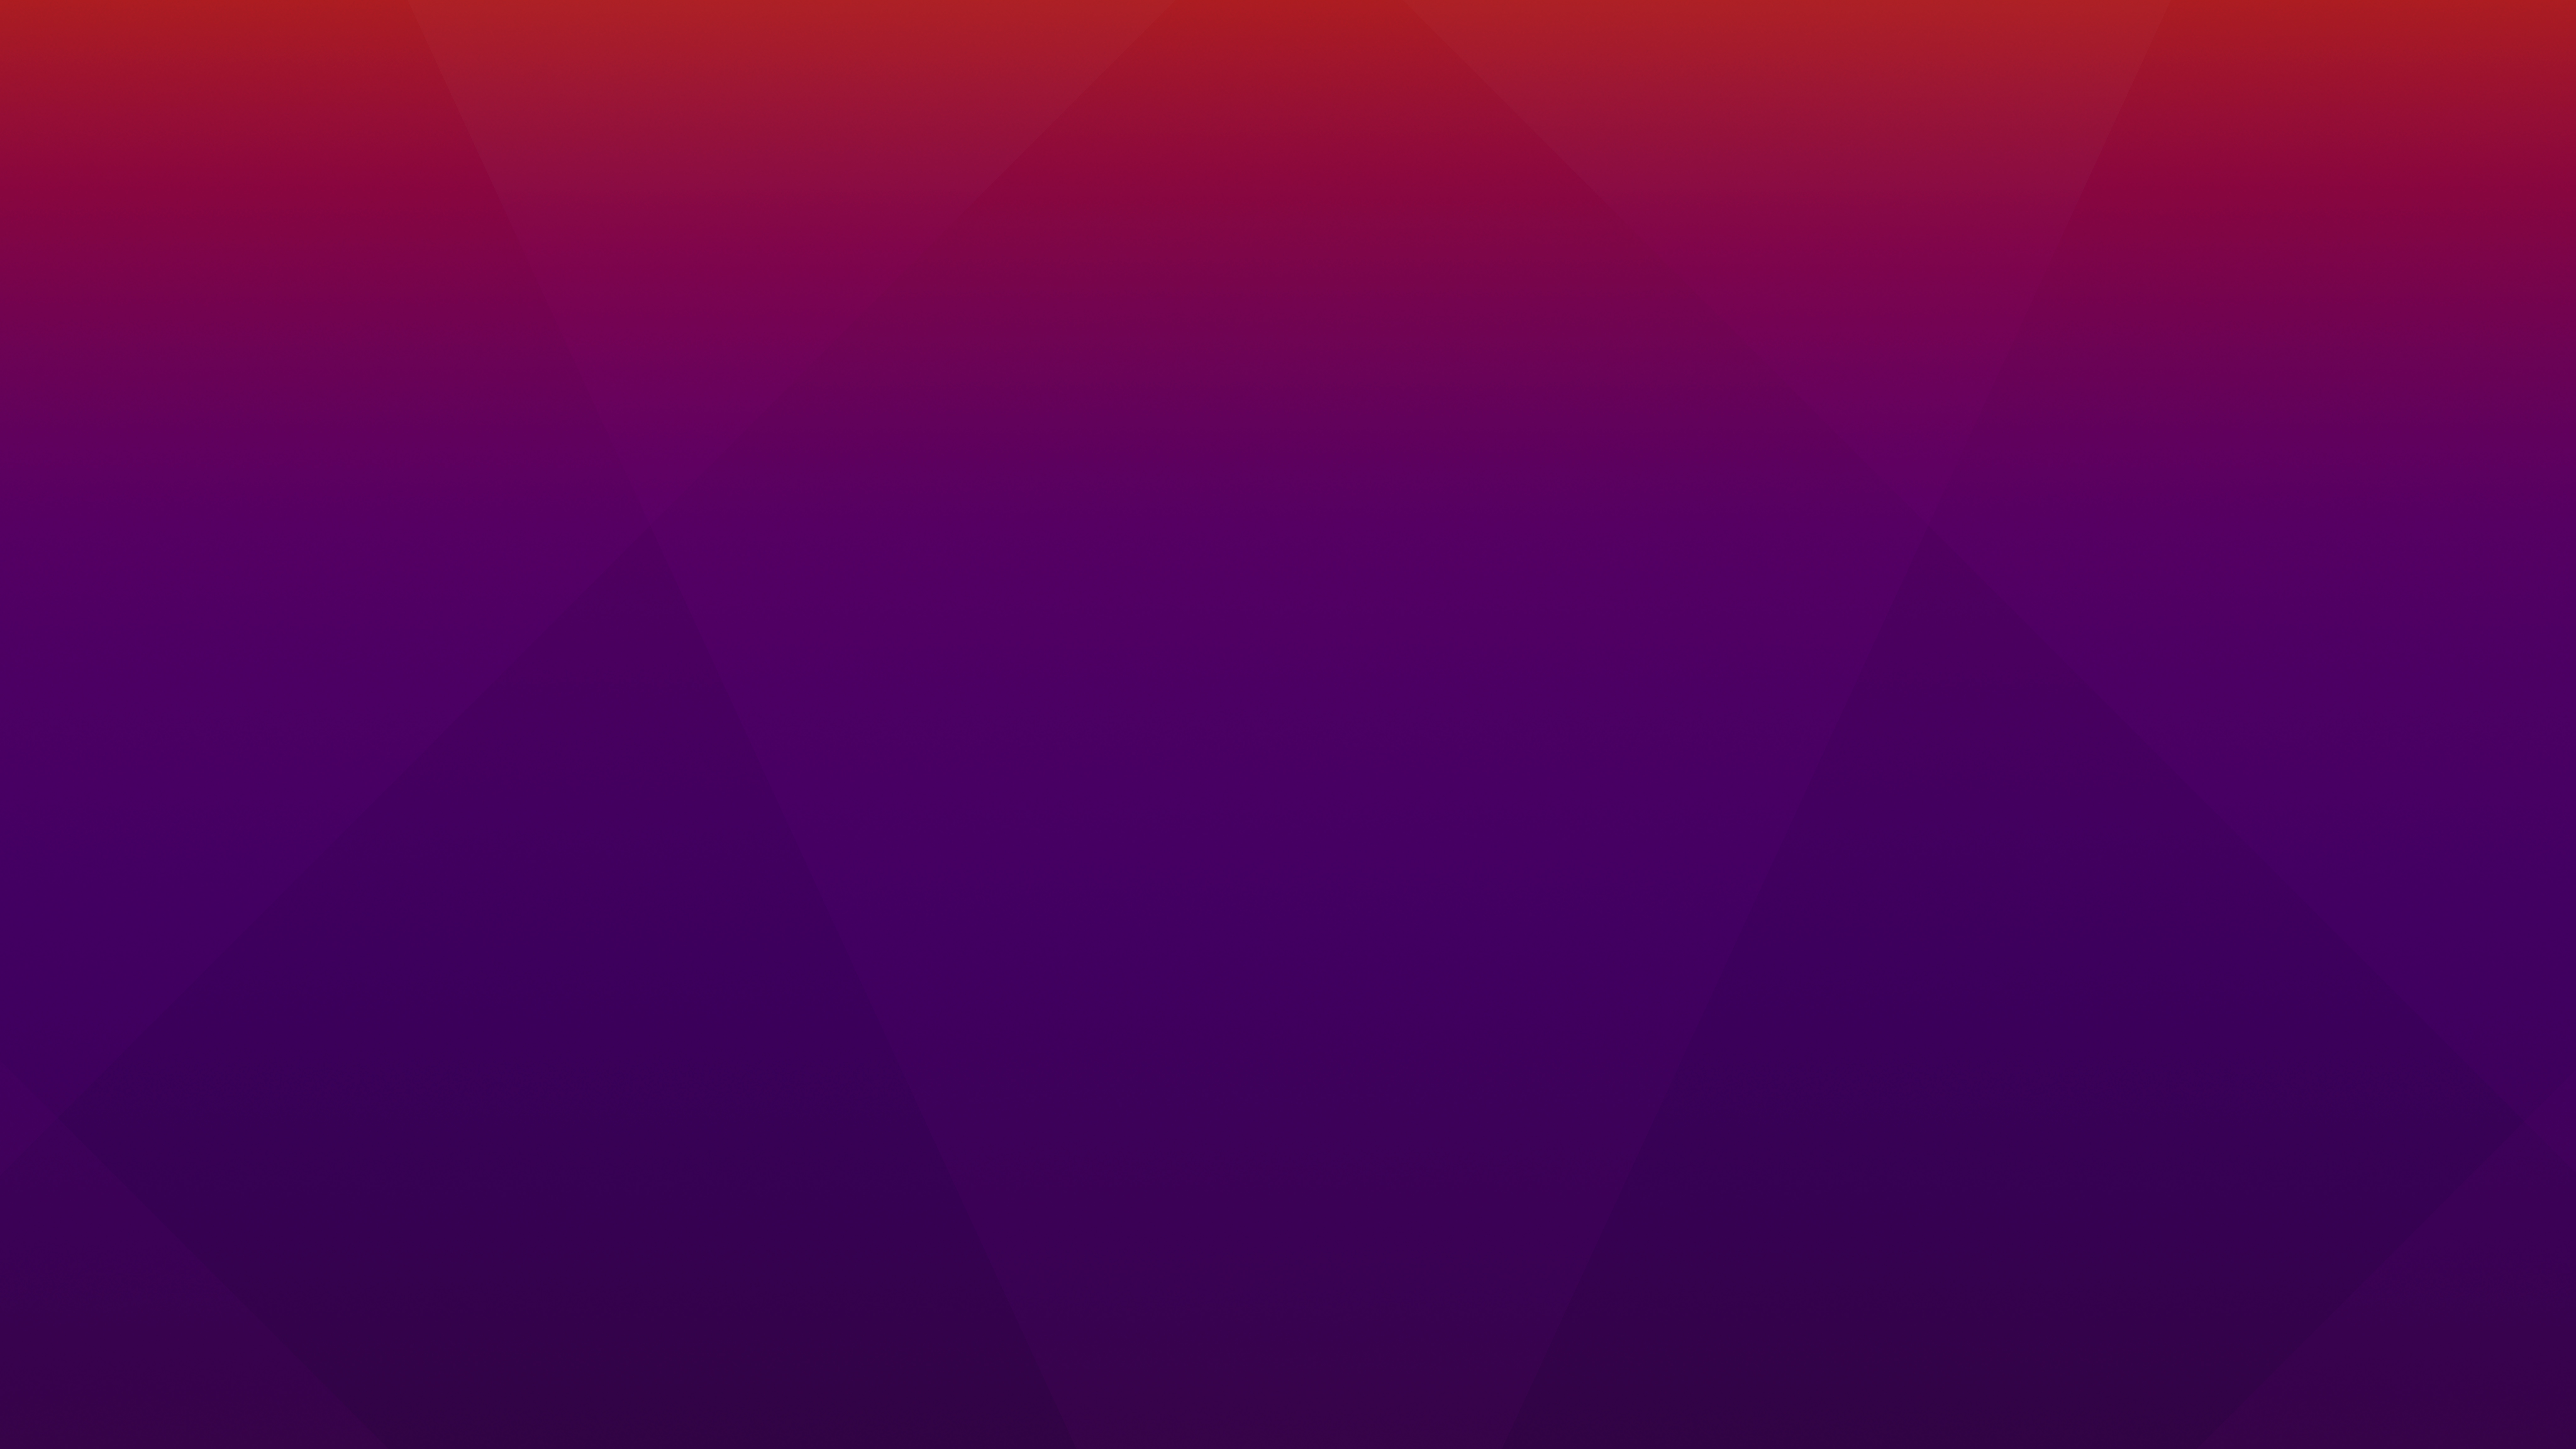 Violet background Wallpaper Ubuntu - Lấy cảm hứng từ sắc tím hoa lavender quyến rũ, hình nền Ubuntu với màu tím nhạt sẽ khiến bạn bị mê hoặc. Chúng tạo nên không gian làm việc tươi sáng và tinh tế, giúp bạn chú trọng tối đa vào công việc. Hãy thưởng thức bức hình nền Ubuntu màu tím quyến rũ này ngay hôm nay.